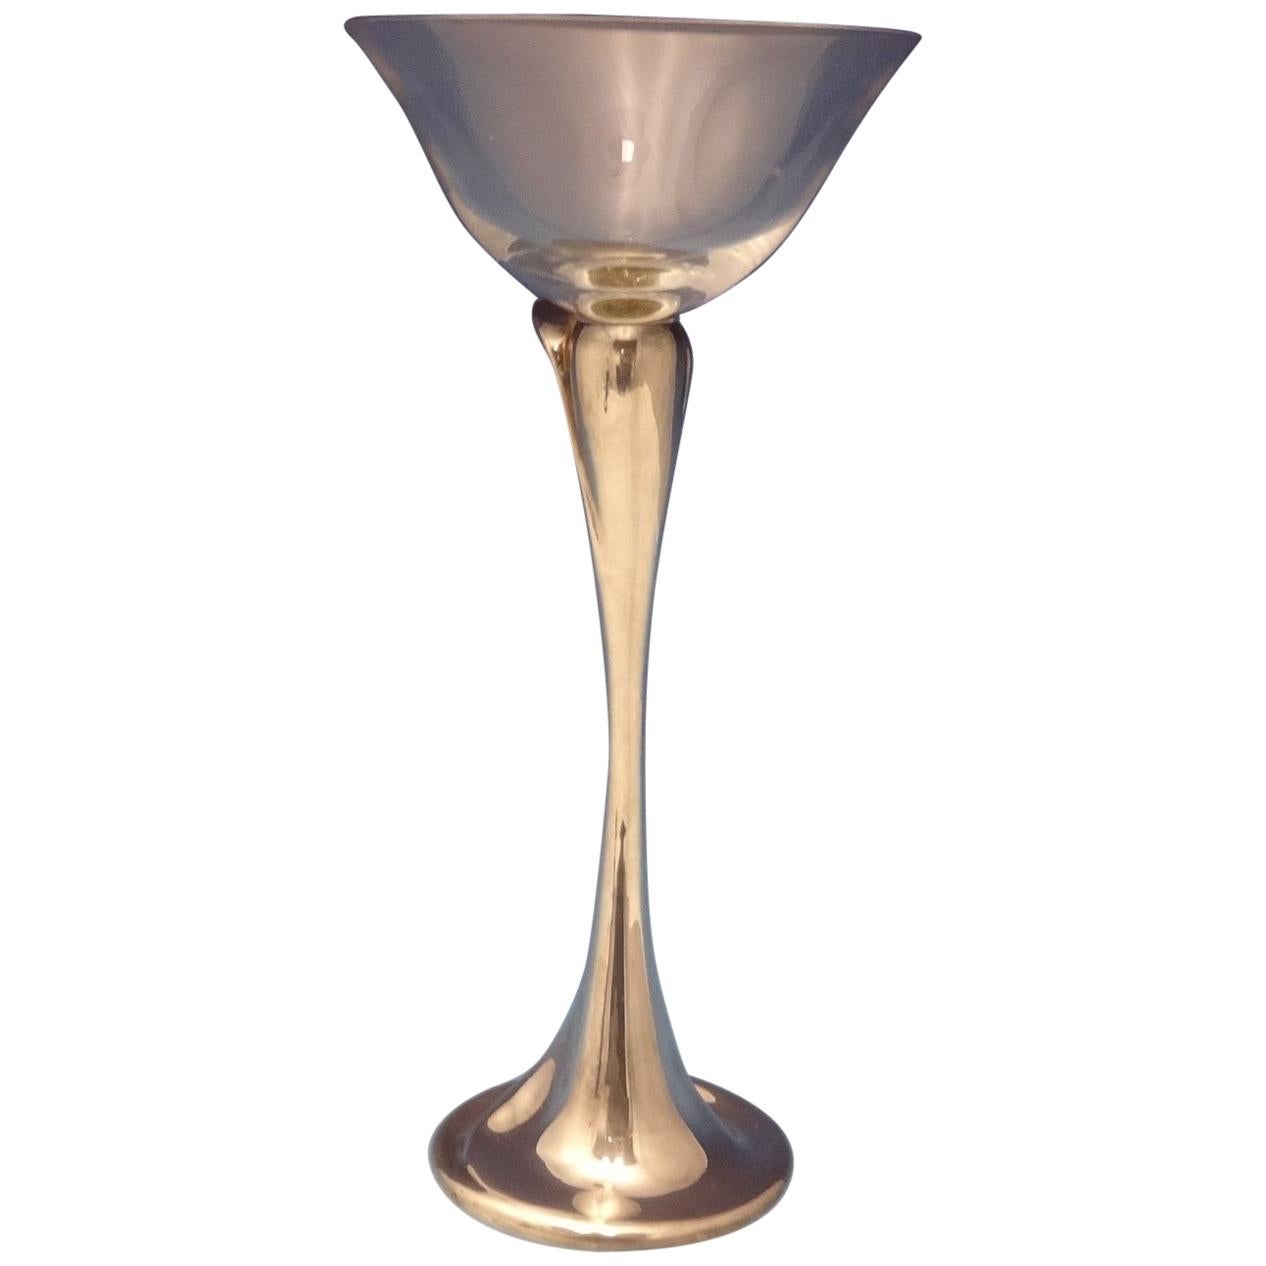 Tiffany & Co. Sterling Silver Martini Glass Designed by Elsa Peretti